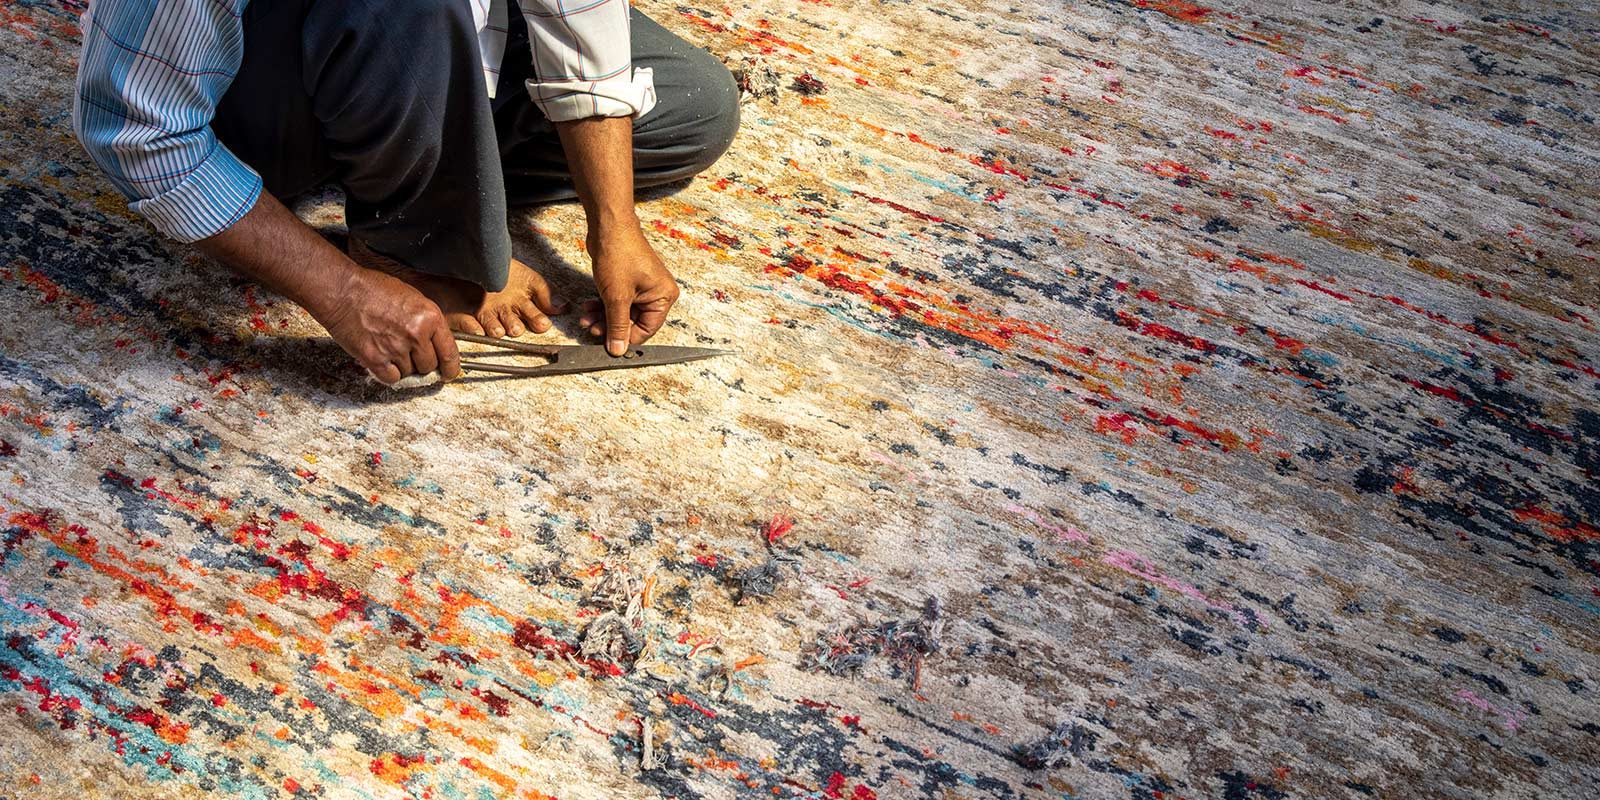 Person in halber Draufsicht, die auf dem Boden kniet und mit einer Schere Stoff schneidet; bunter Teppich mit abstraktem Muster im Hintergrund.